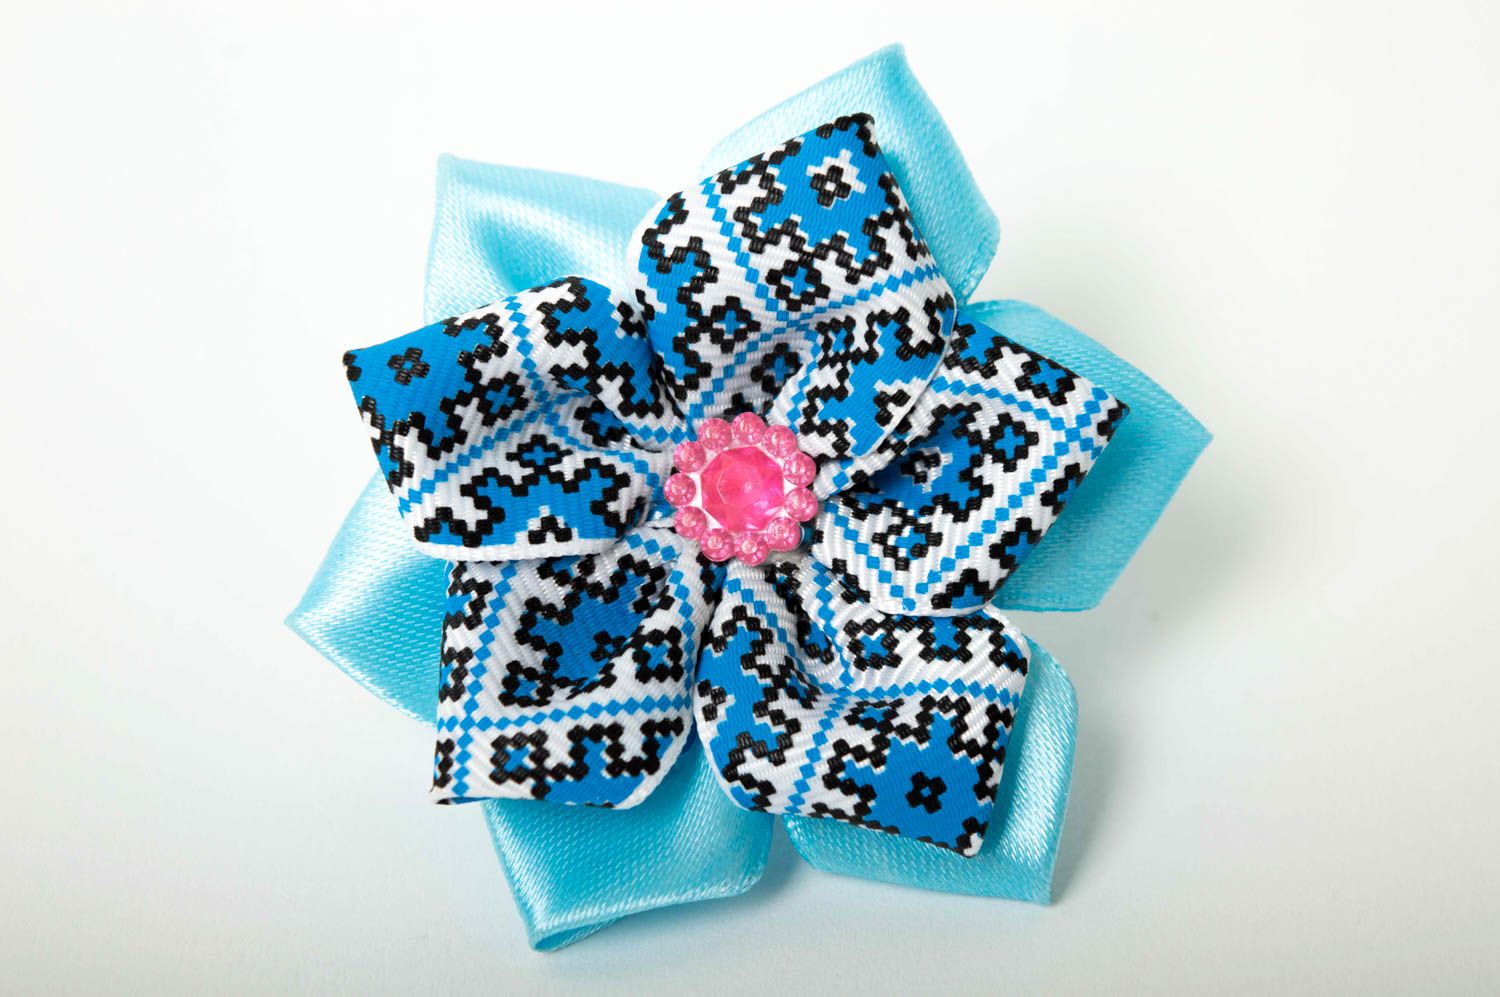 Childrens handmade flower scrunchie textile scrunchy for kids hair tie ideas photo 5